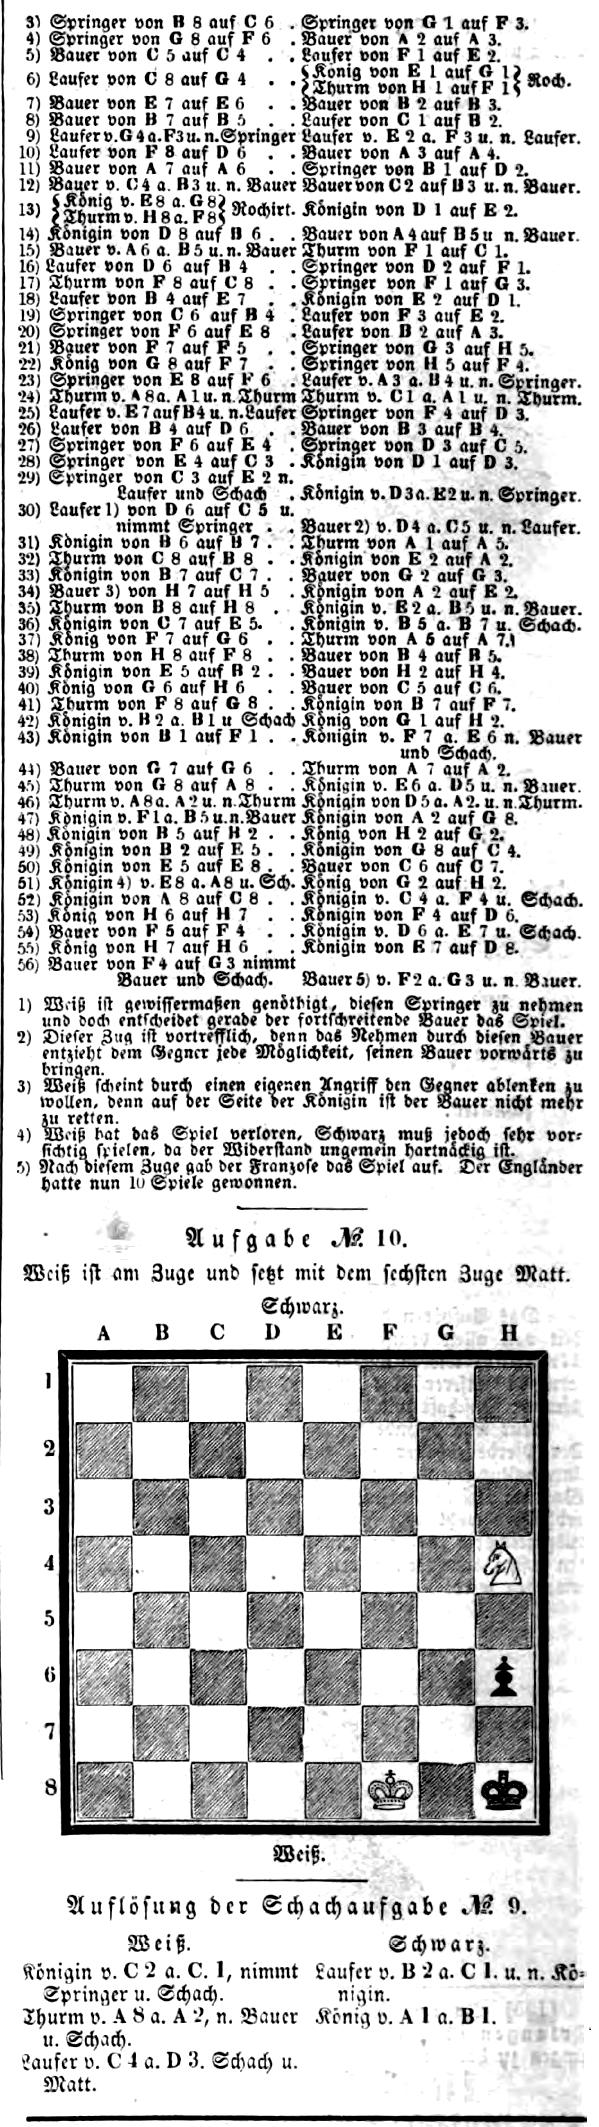 1844.02.24-02 Leipzig Illustrirte Zeitung.jpg